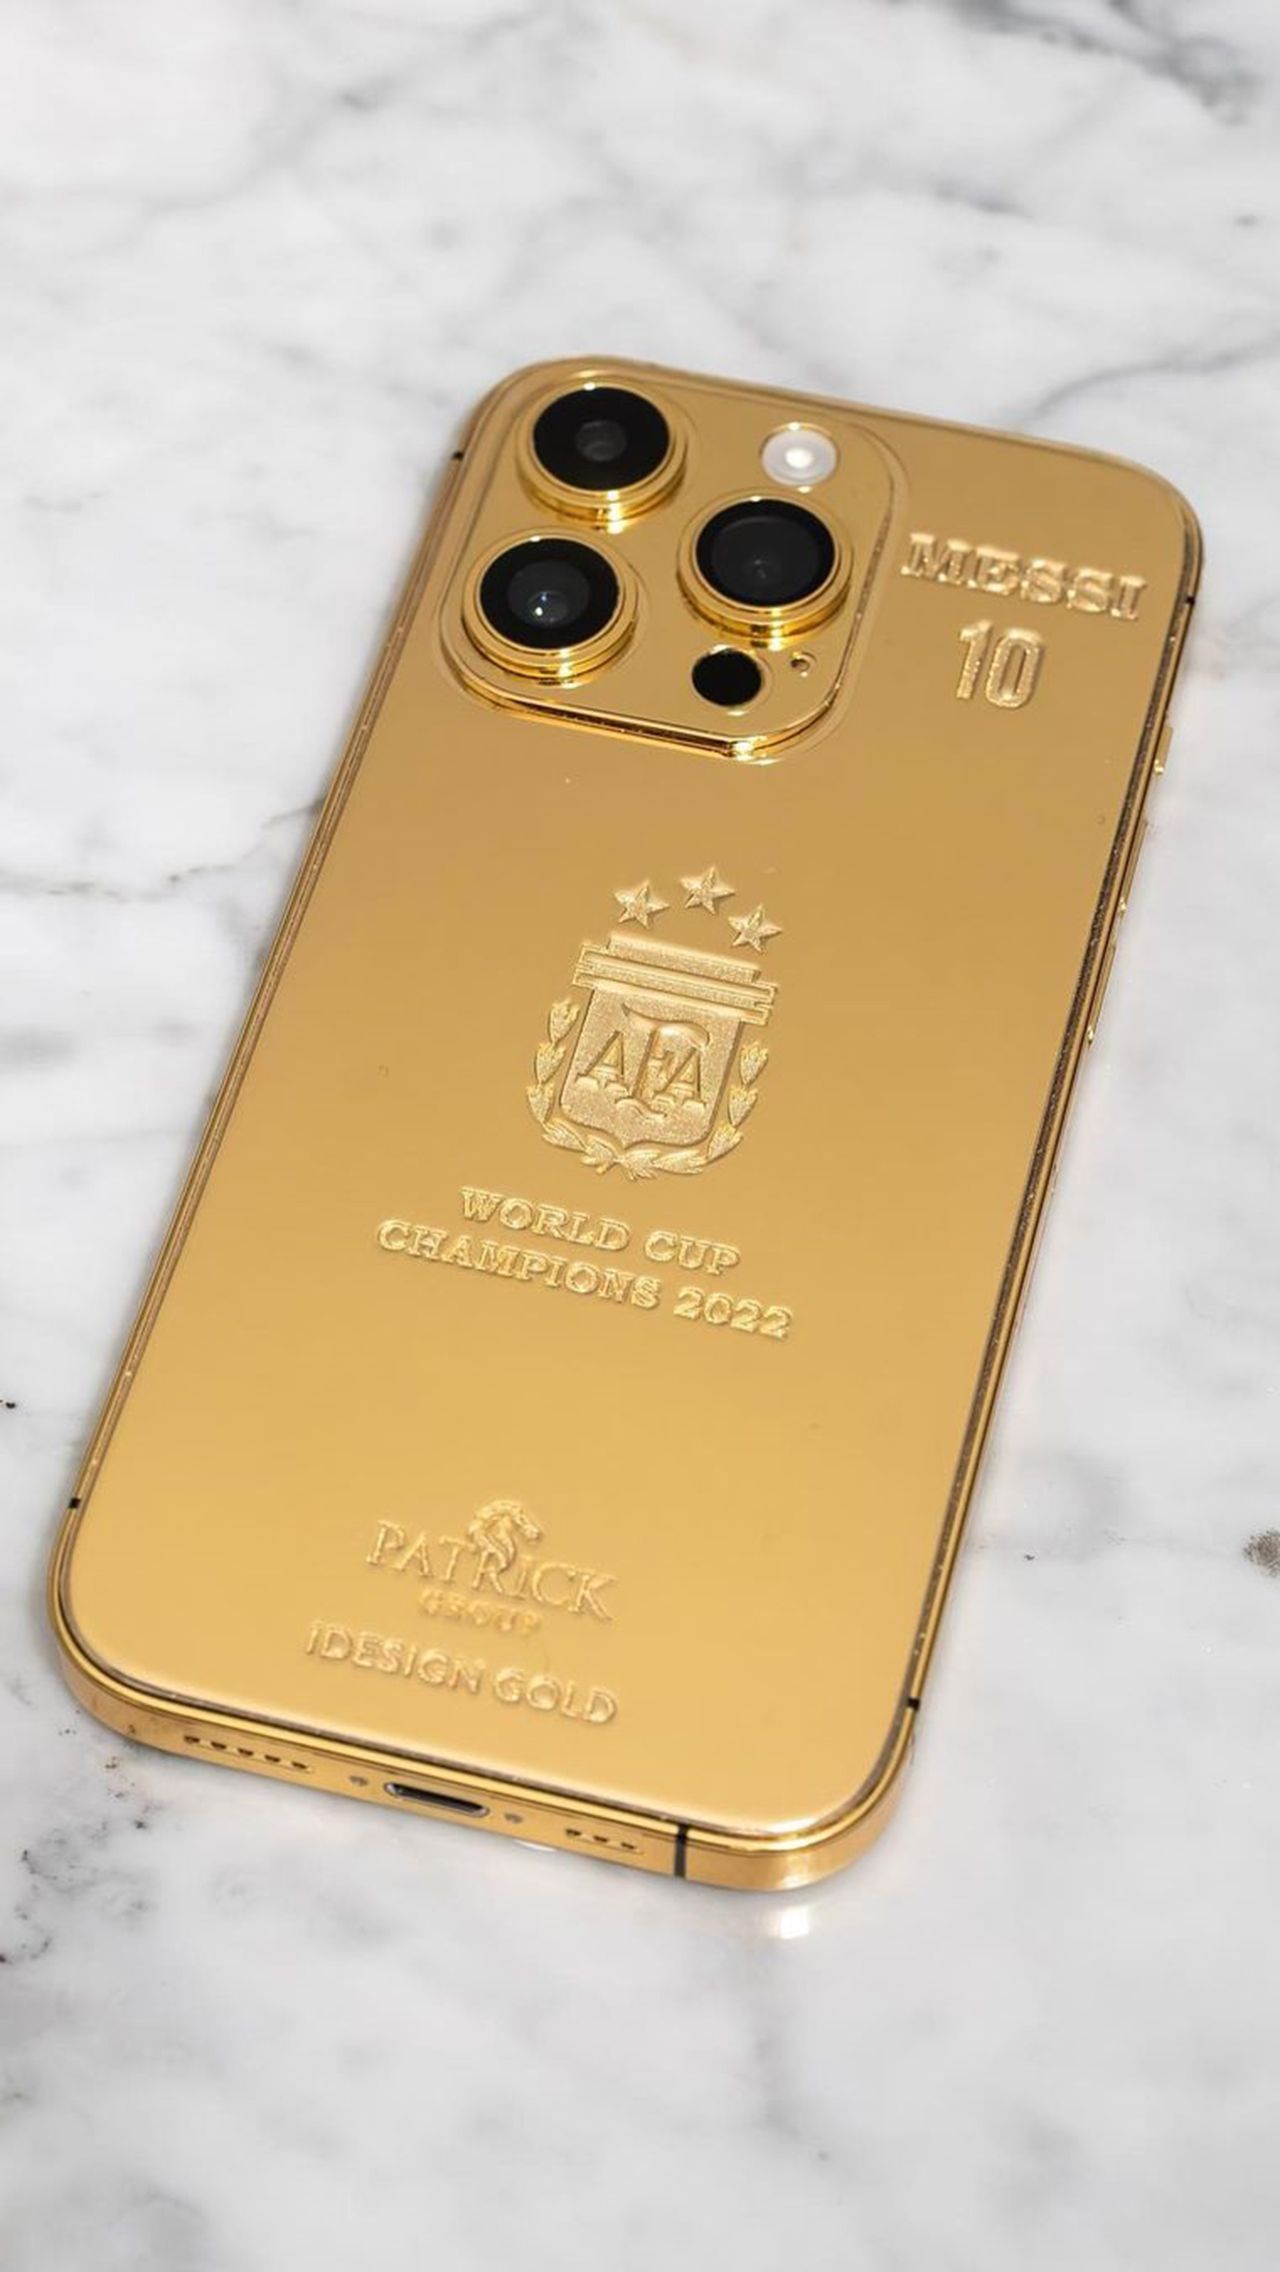 Капитан Аргентины попросил дизайнерскую компанию подготовить 35 экземпляров iPhone 14, покрытых 24-каратным золотом. На телефонах выгравированы имена игроков, номера и эмблема сборной.